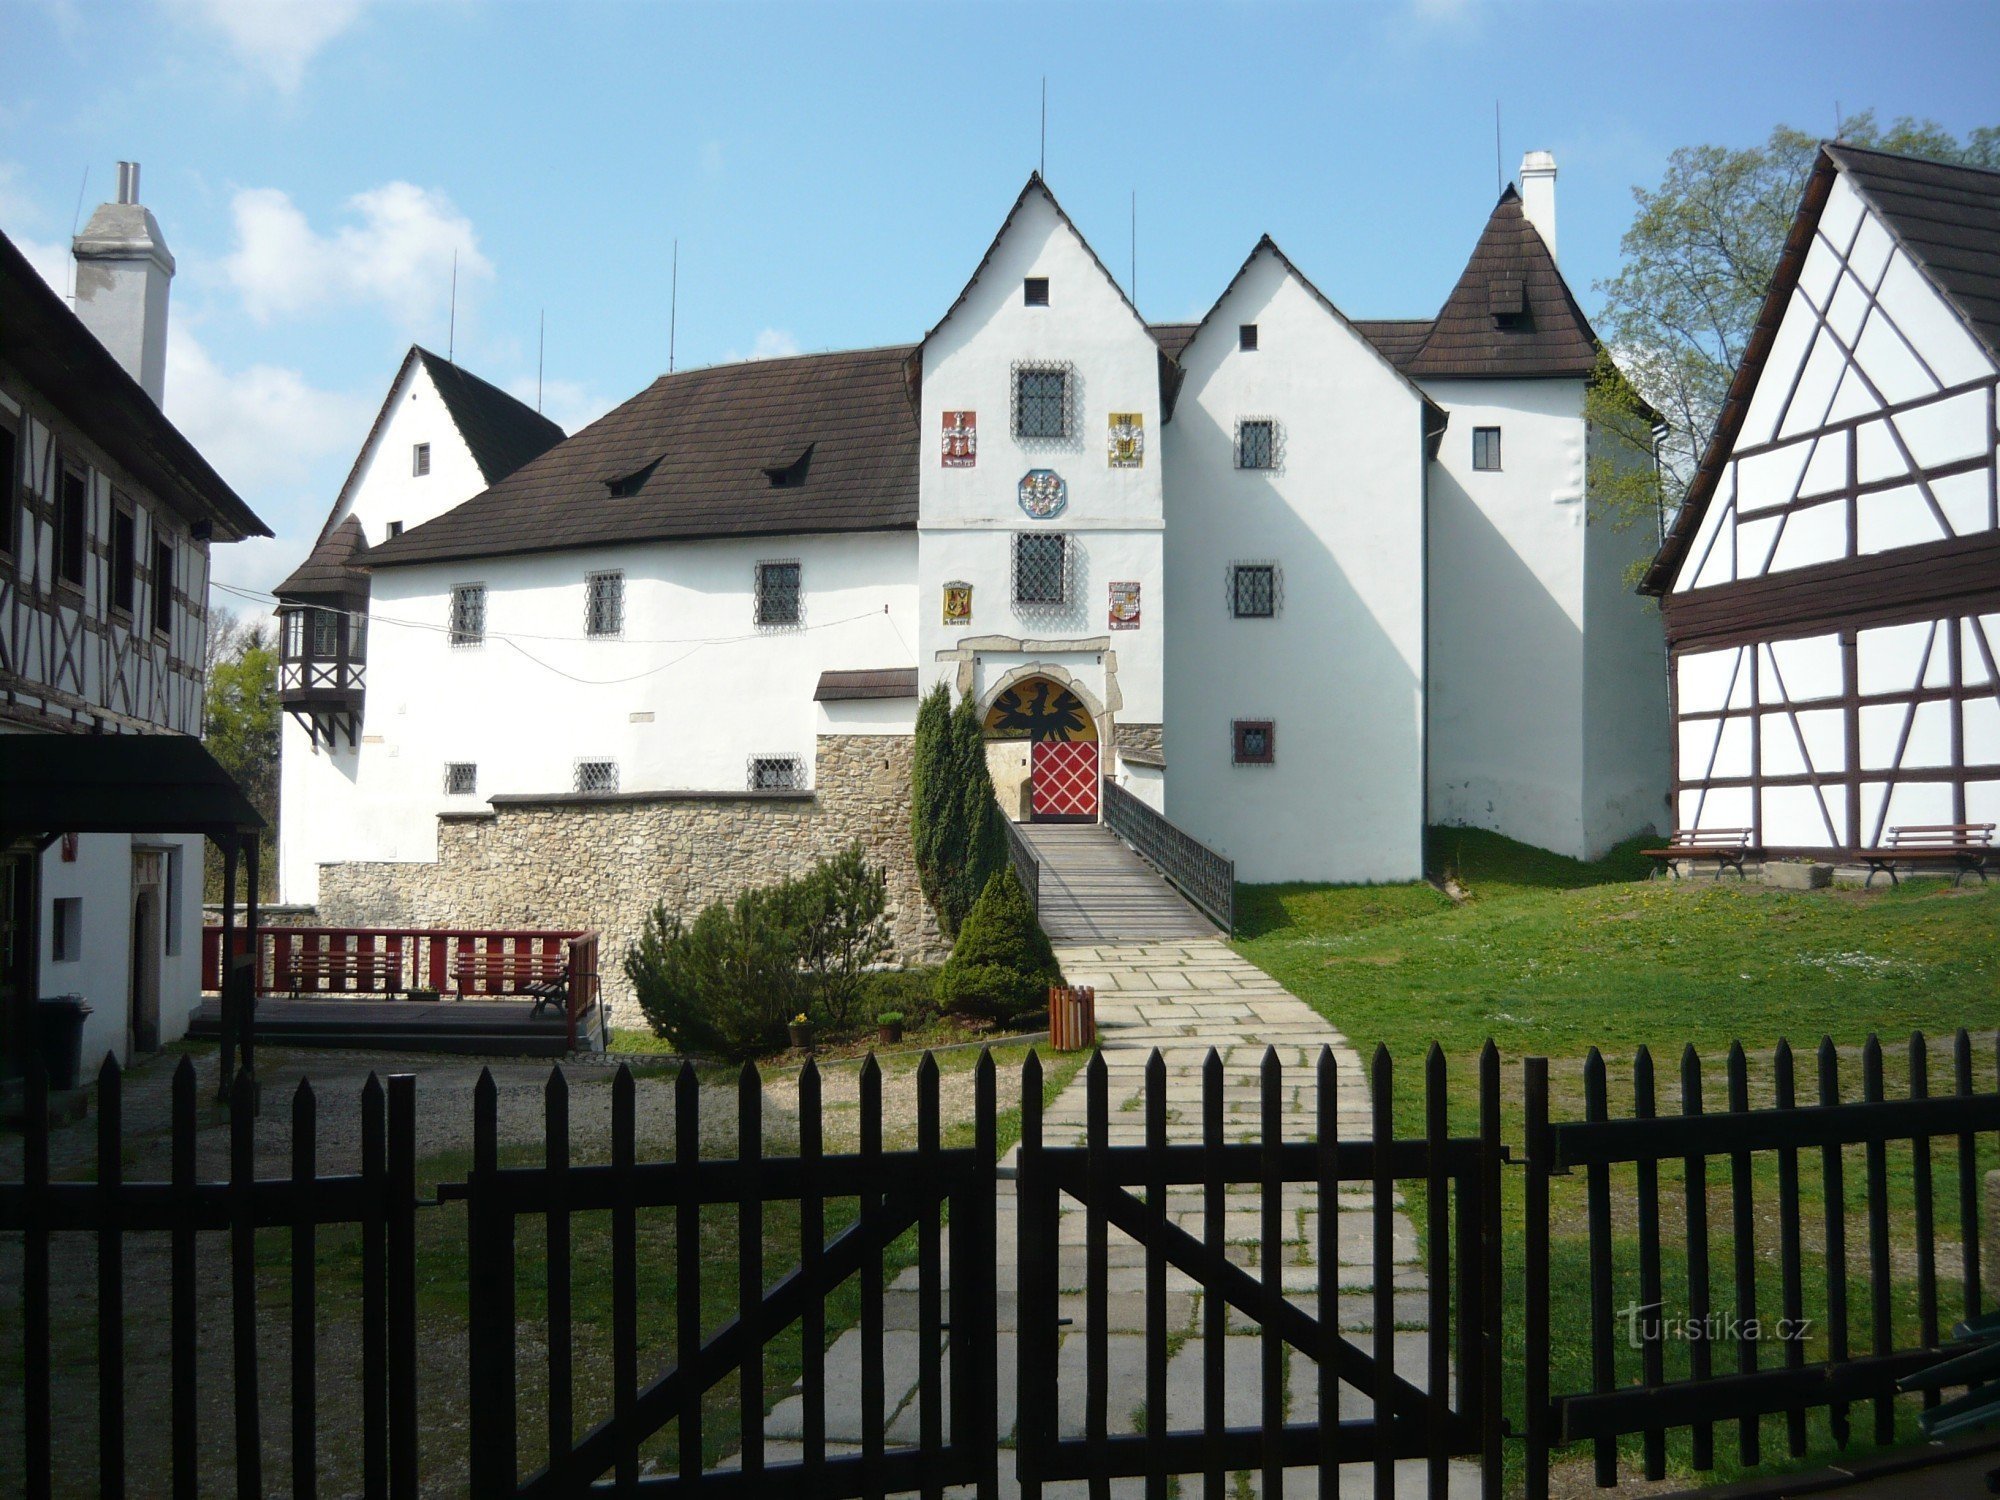 Seeberg Castle (Ostroh) 的教育路径